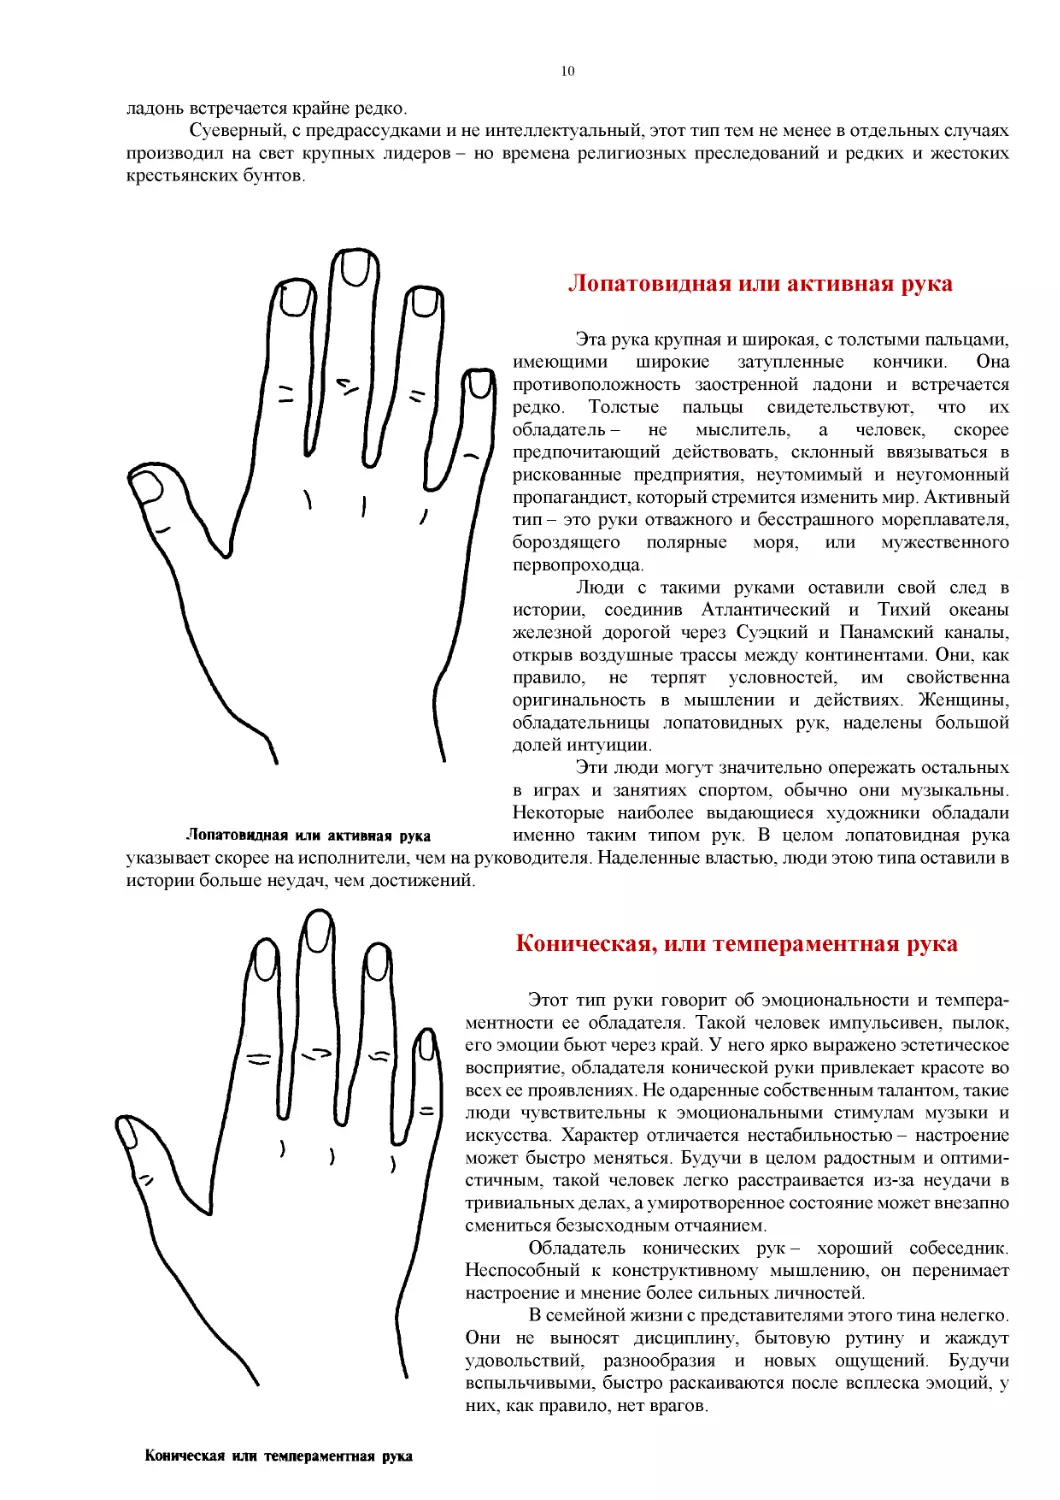 ﻿Лопатовидная или активная рук
﻿Коническая, или темпераментная рук